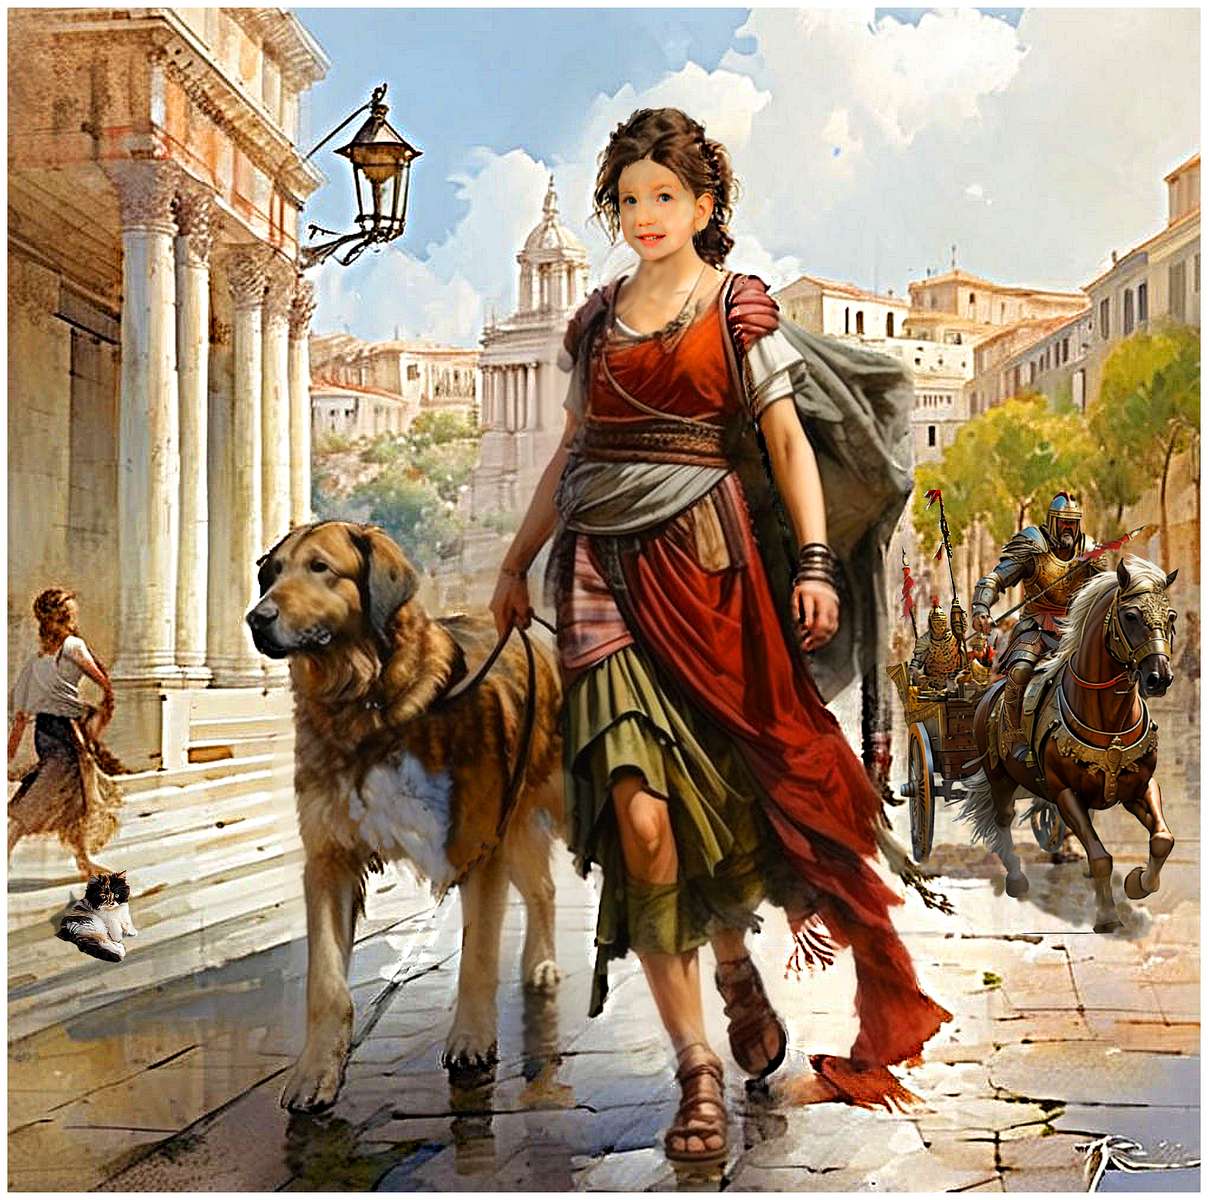 Canis strzeże swojej kochanki podczas spaceru po Rzymie. puzzle online